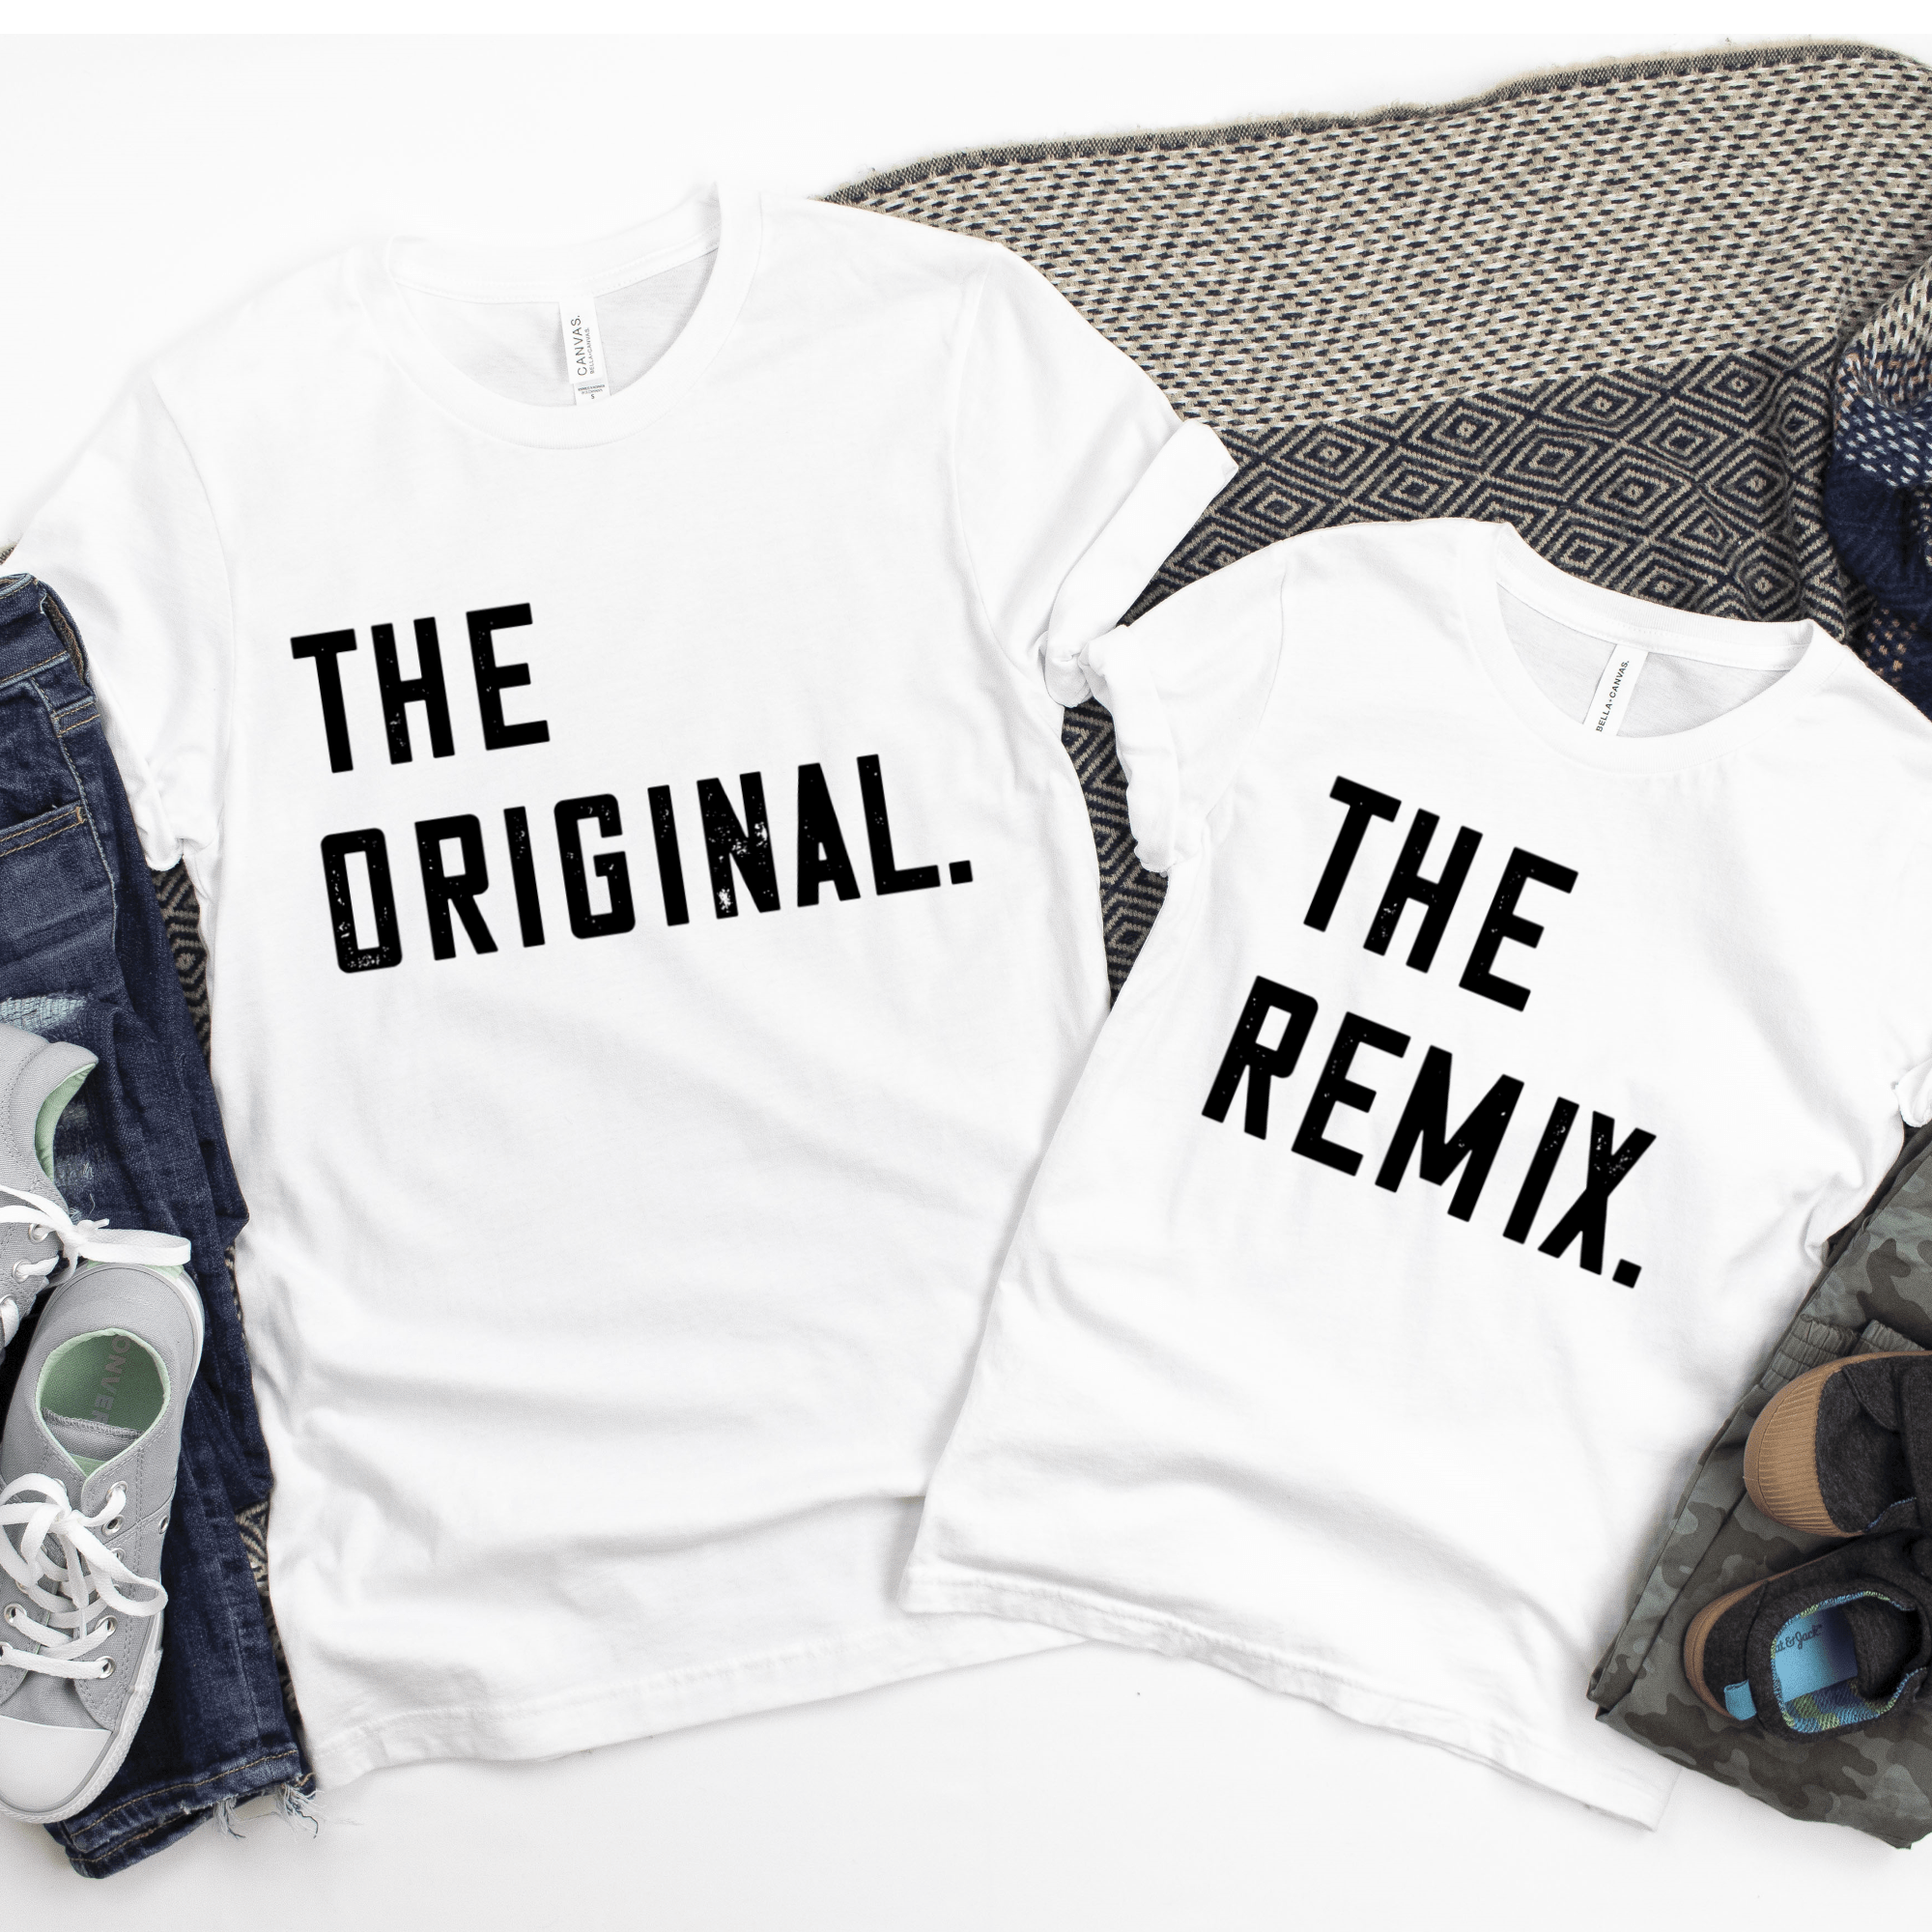 Vater Sohn Partnerlook T-Shirt Set - The Original The Remix - JUNALOO